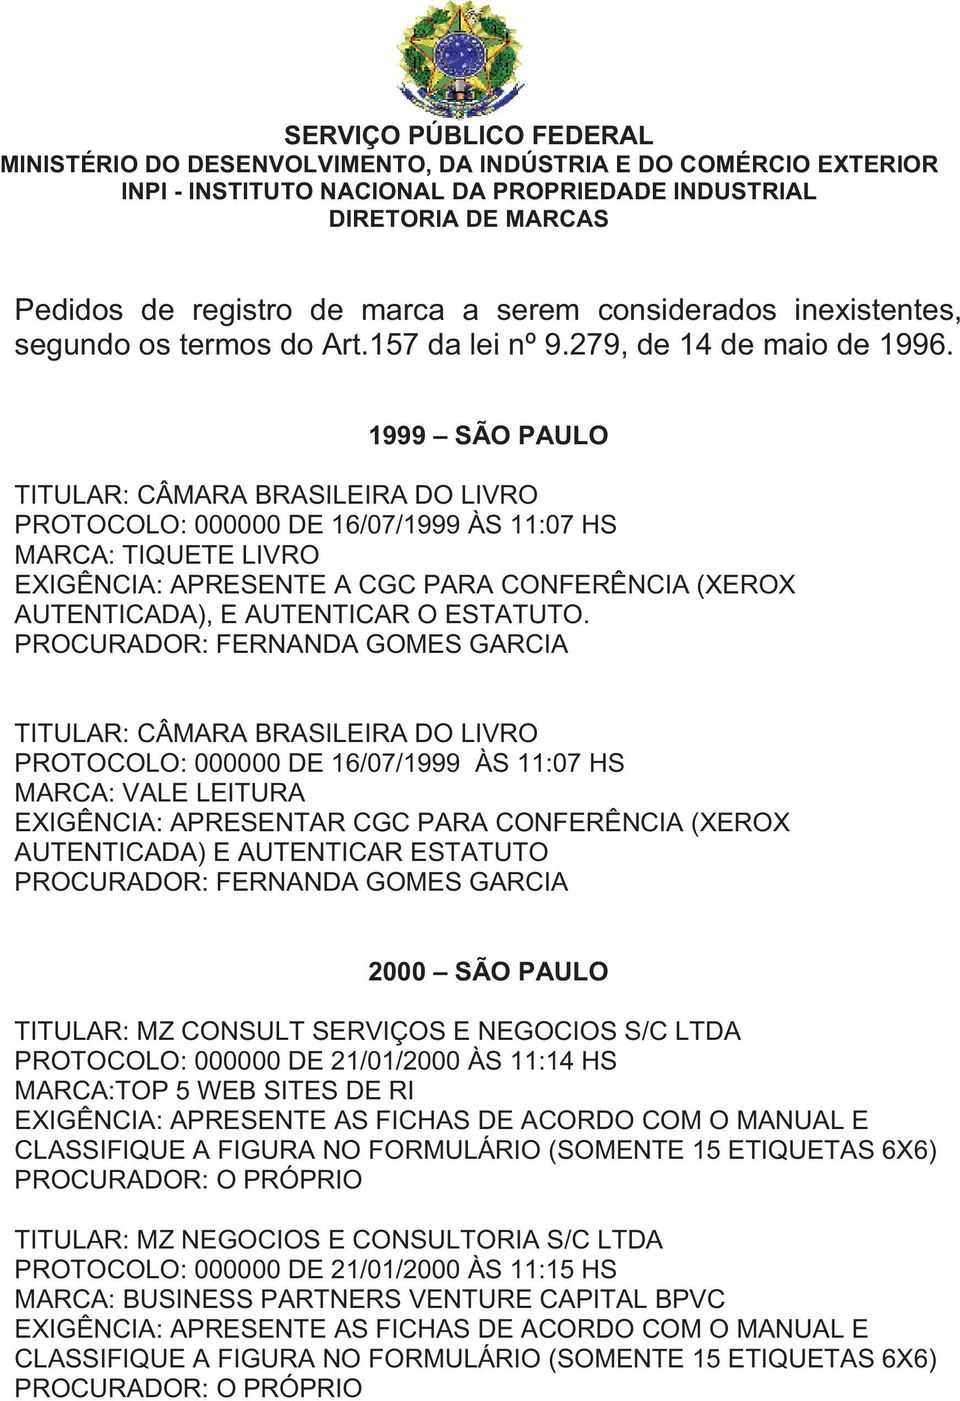 1999 SÃO PAULO TITULAR: CÂMARA BRASILEIRA DO LIVRO PROTOCOLO: 000000 DE 16/07/1999 ÀS 11:07 HS MARCA: TIQUETE LIVRO EXIGÊNCIA: APRESENTE A CGC PARA CONFERÊNCIA (XEROX AUTENTICADA), E AUTENTICAR O